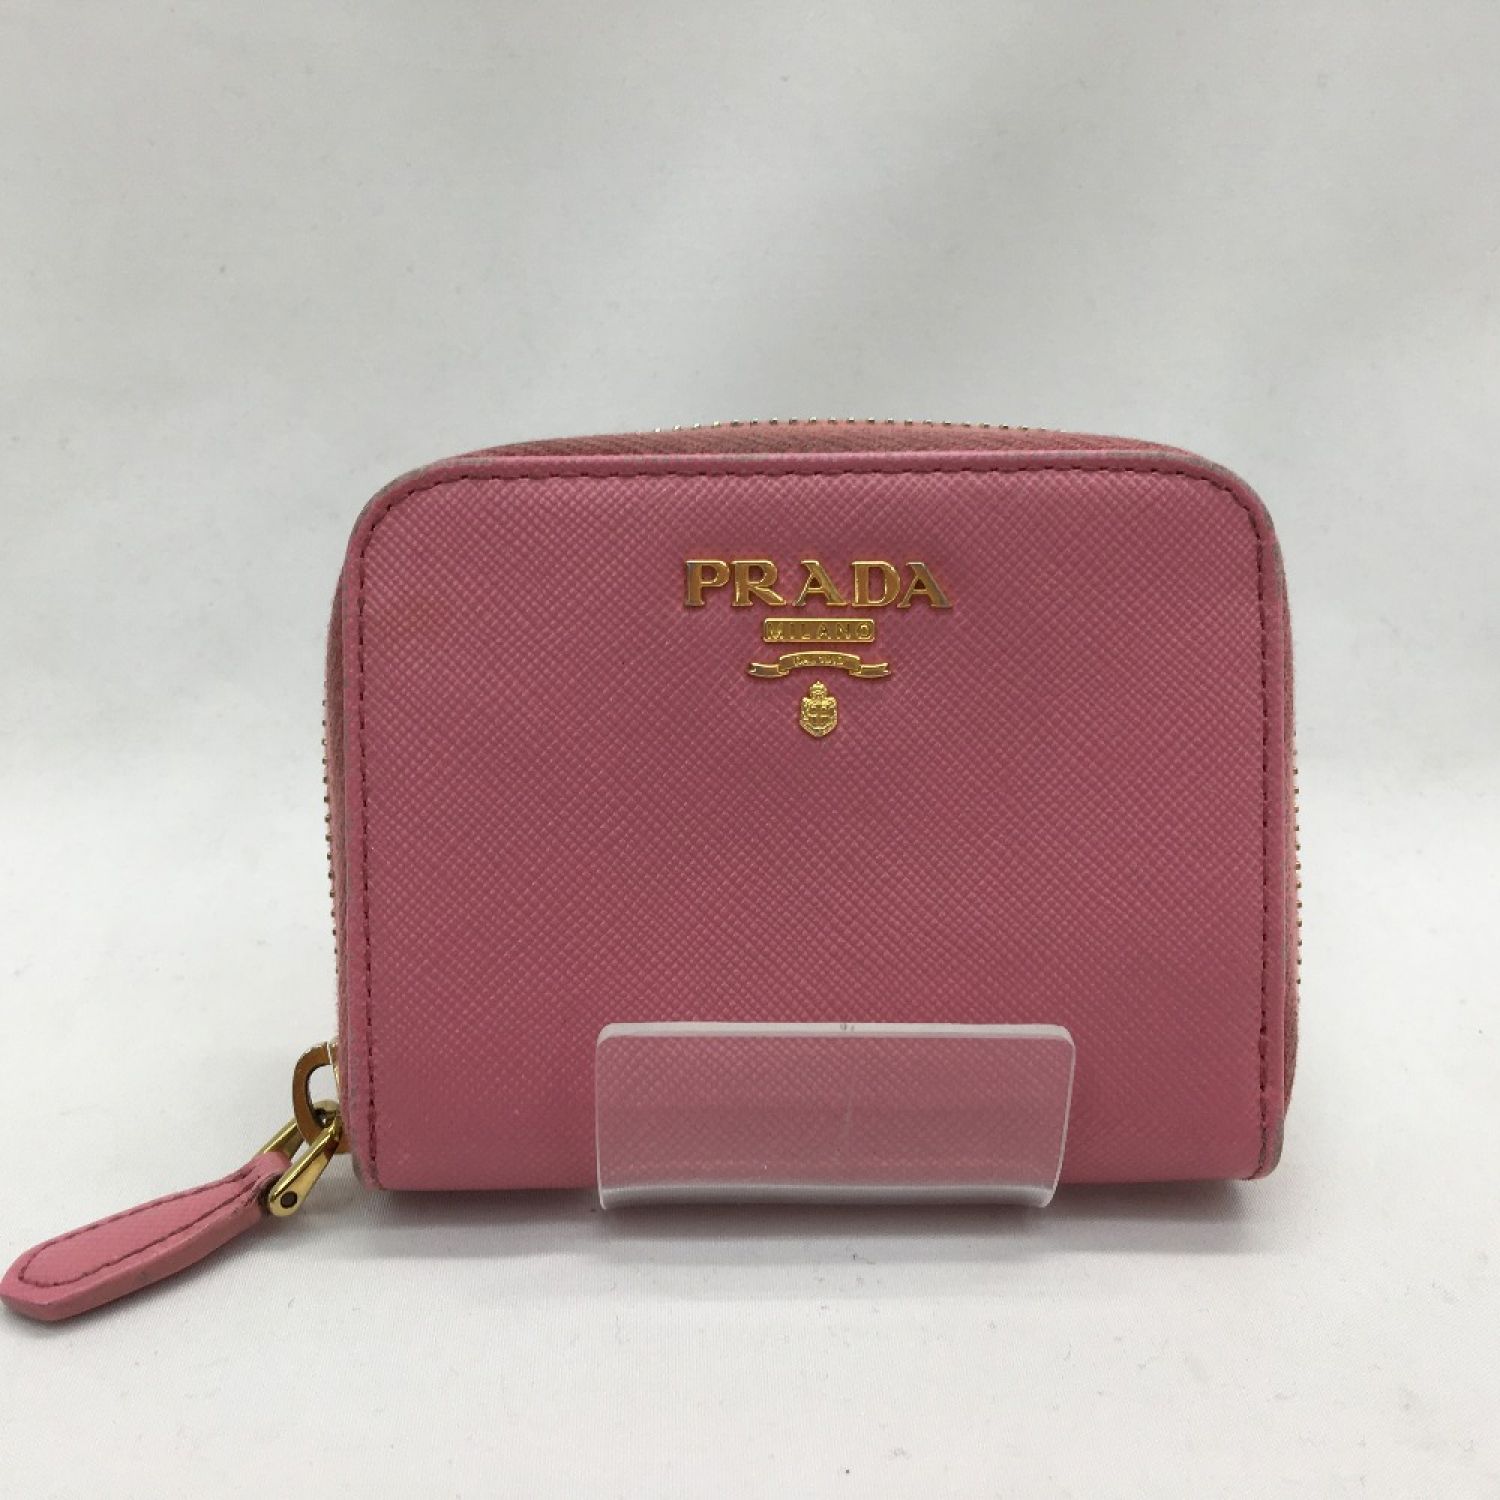 【美品】PRADA プラダ ピンク 財布 コインパース コインケース